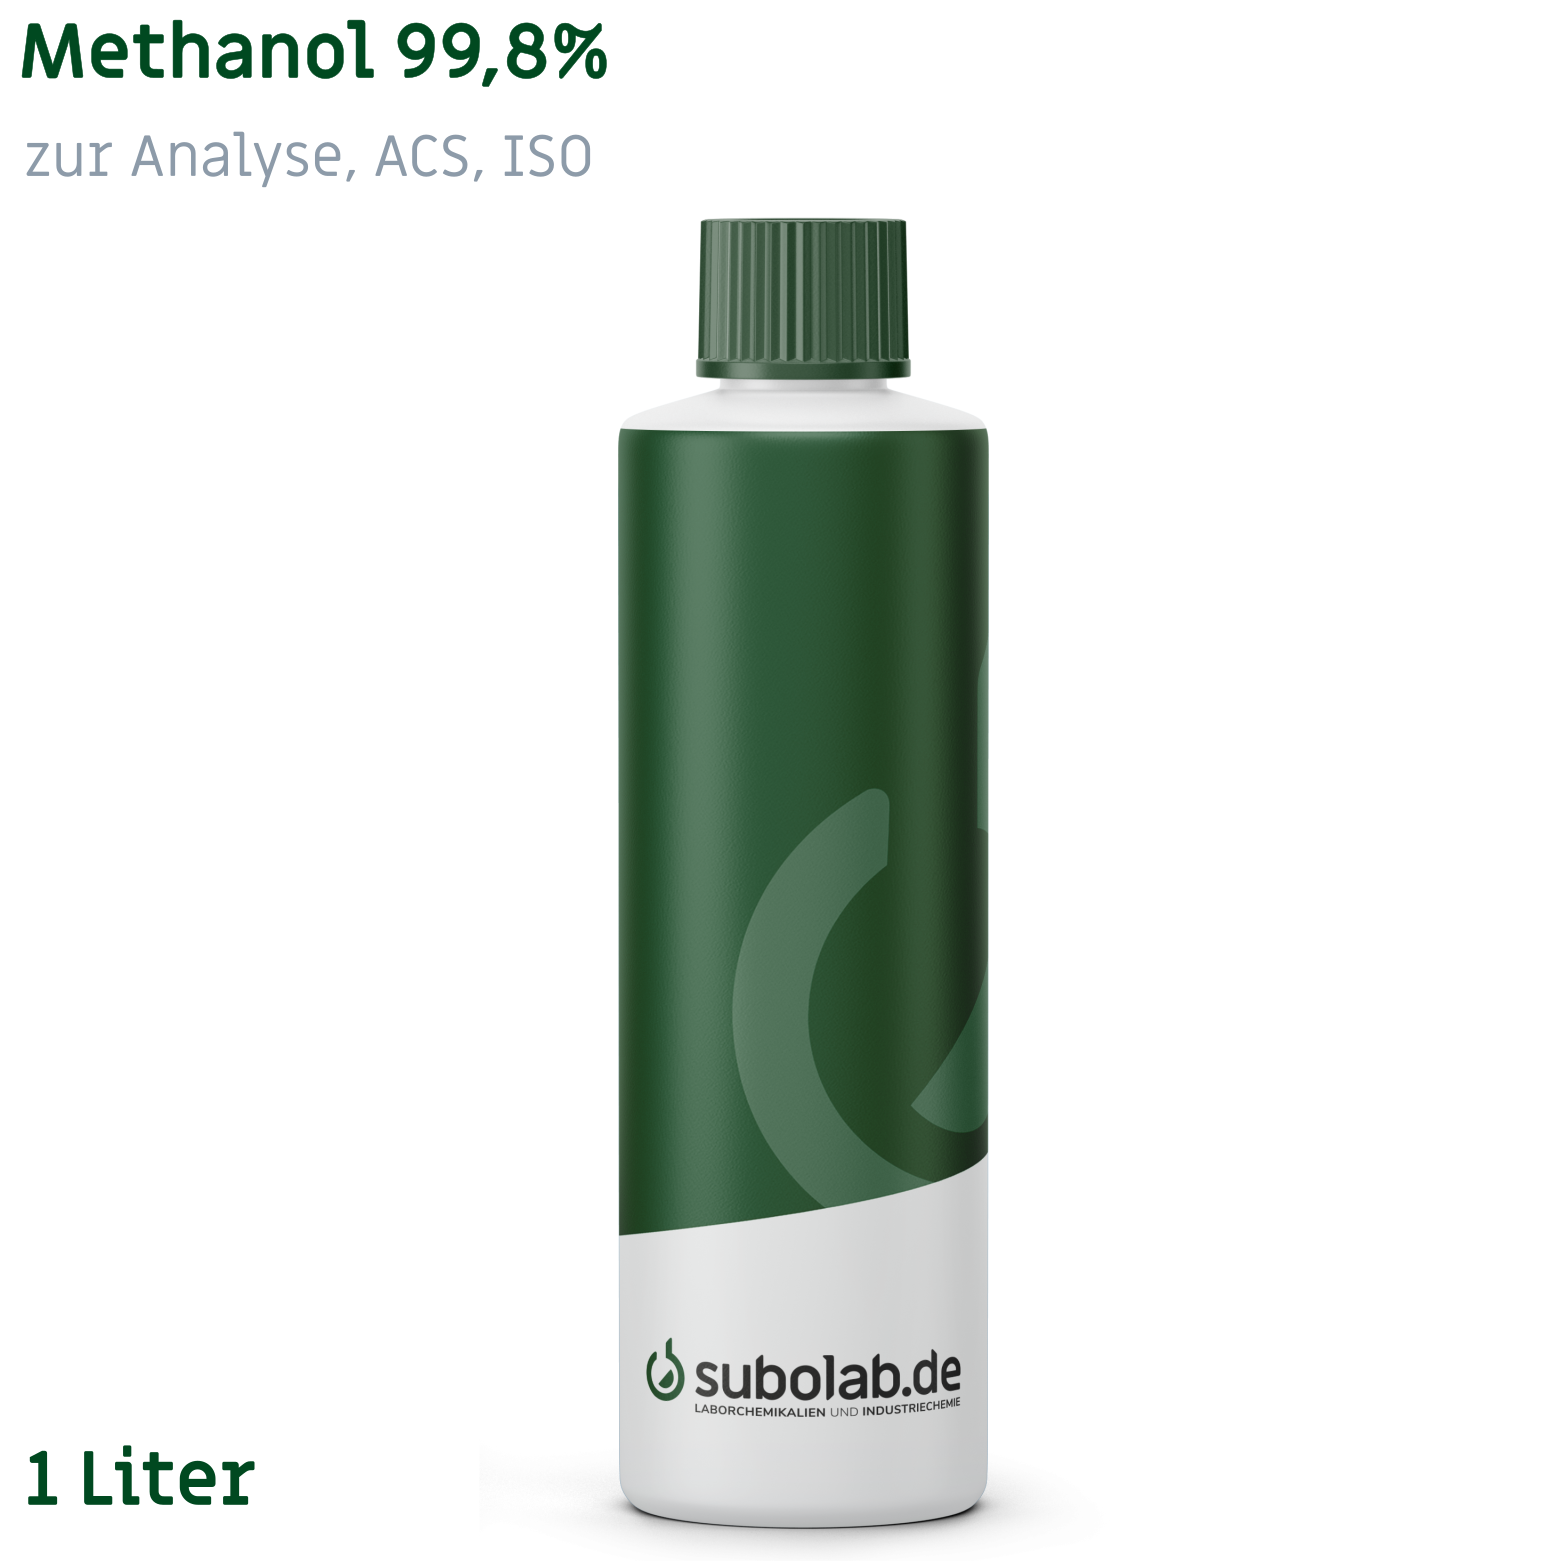 Bild von Methanol 99,8% zur Analyse, ACS, ISO (1 Liter)